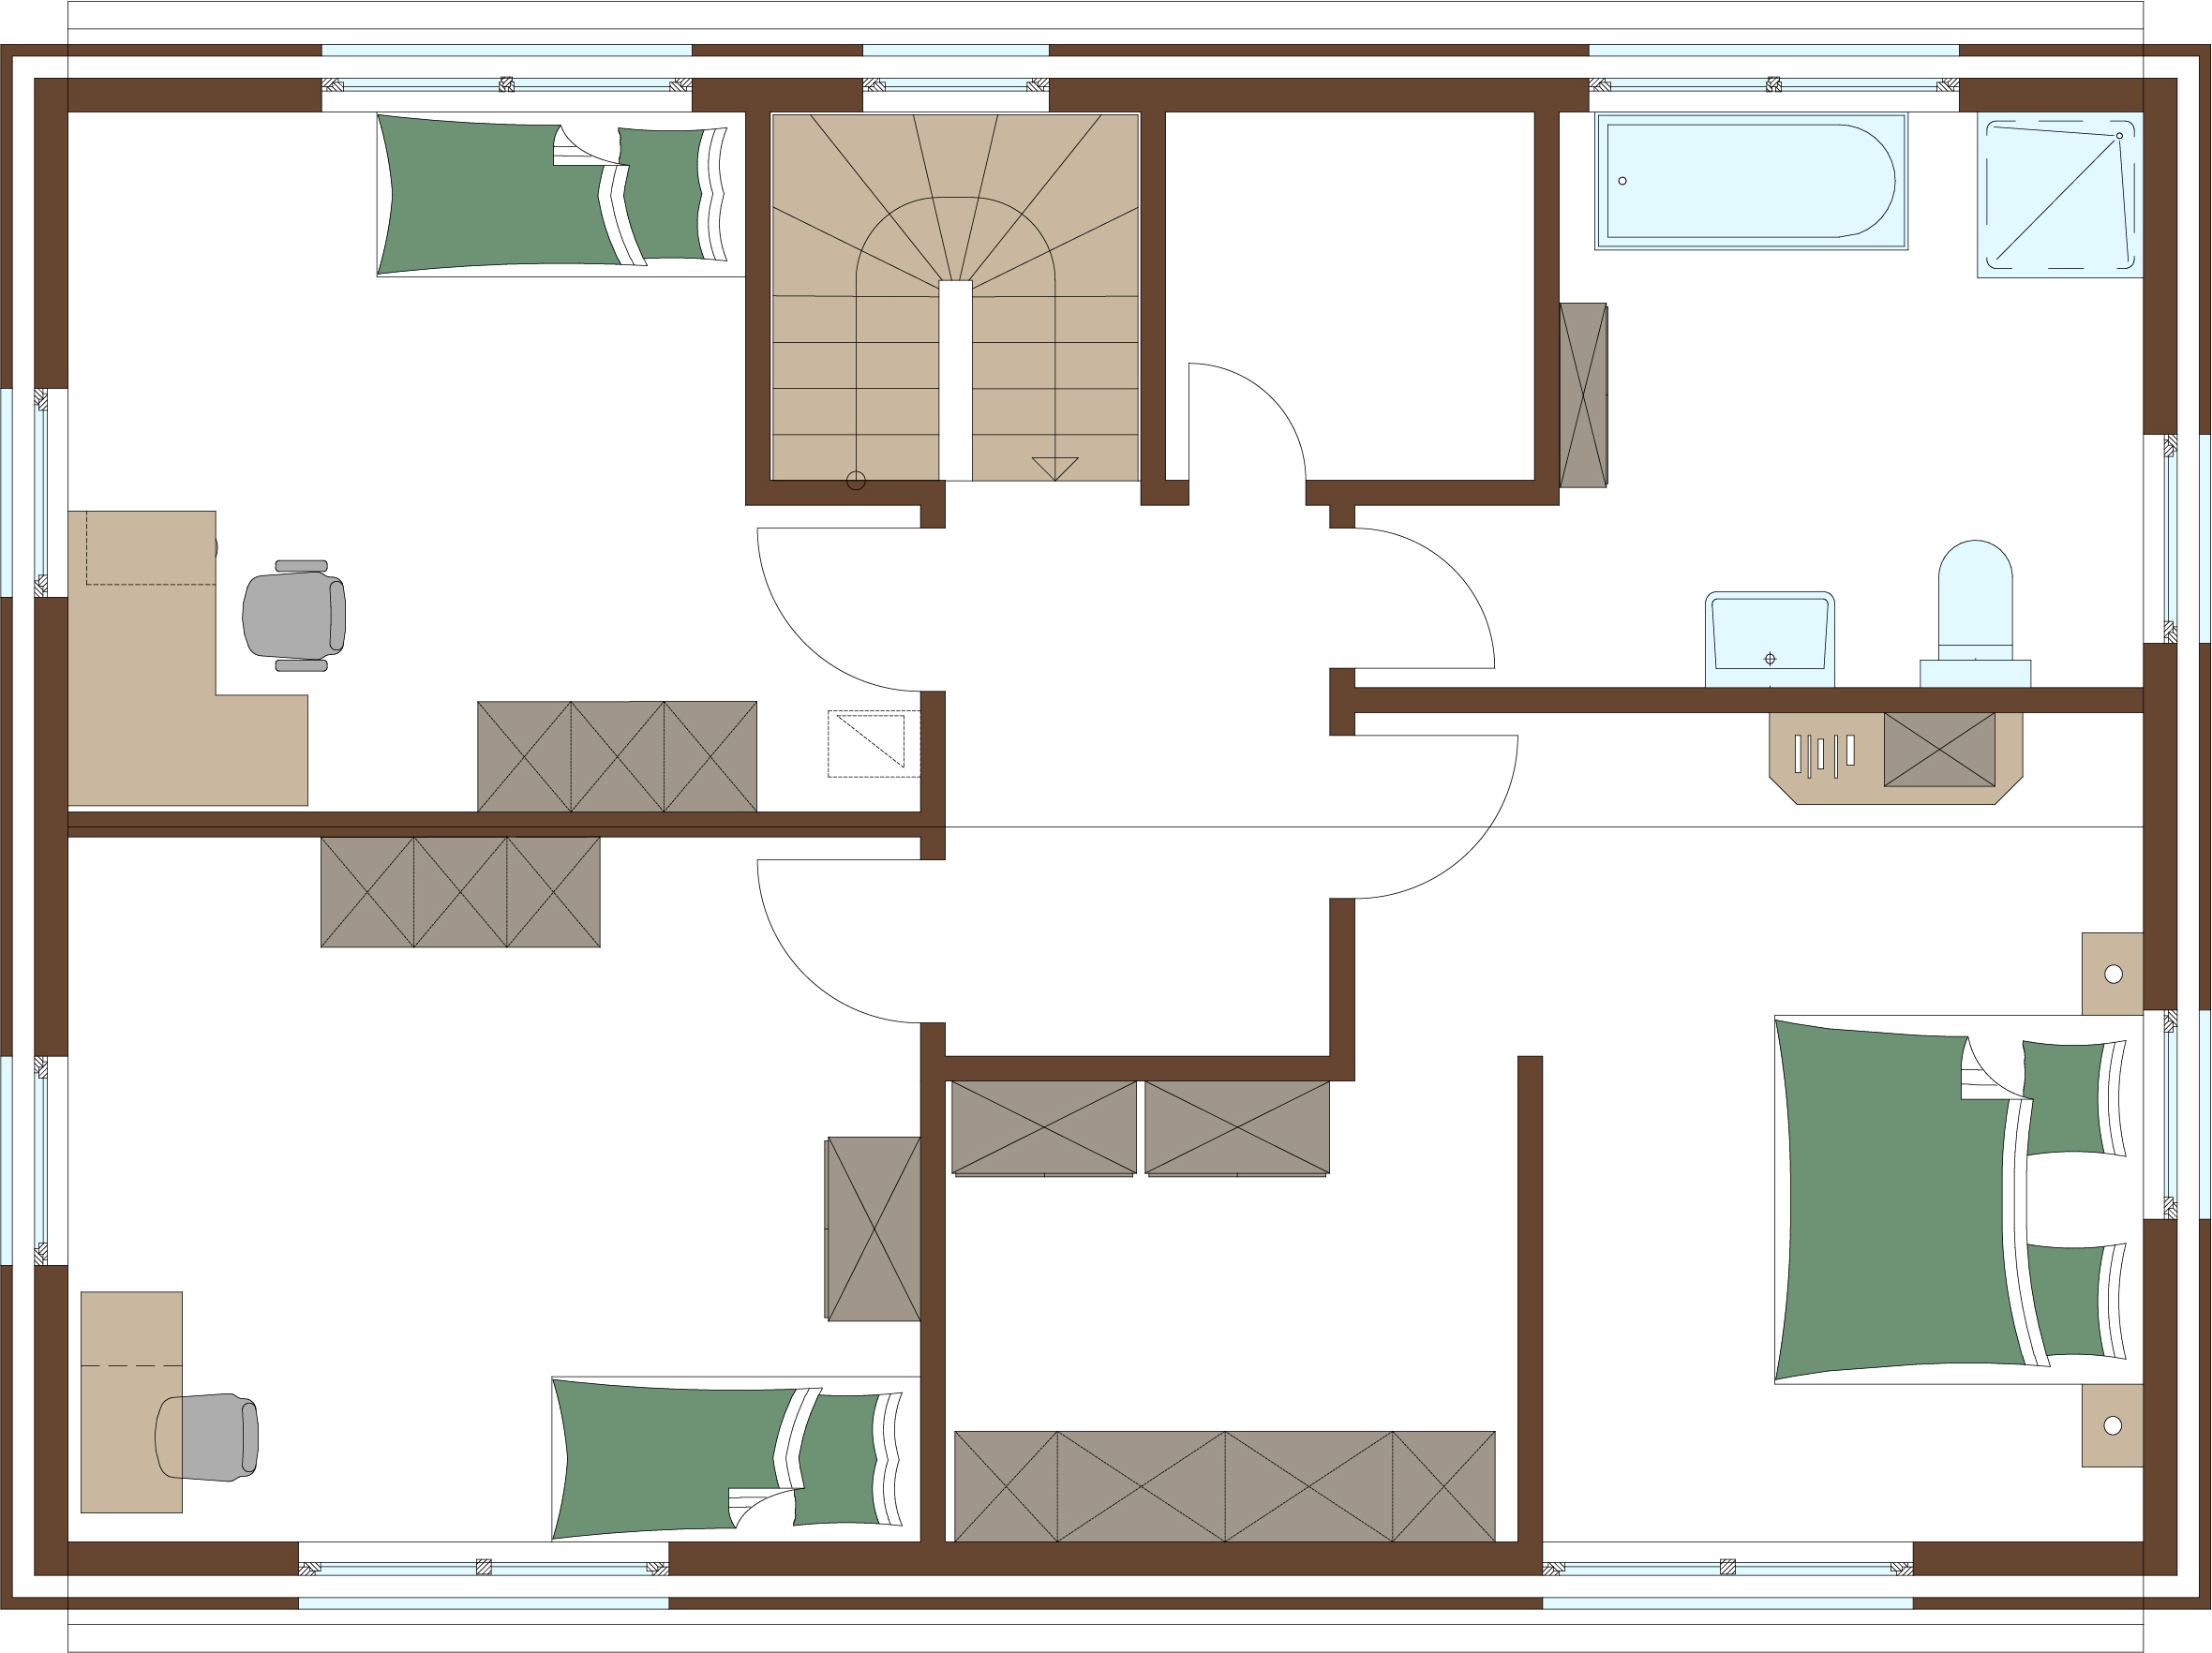 Grundriss Erdgeschoss für Holzrahmenhaus Aktionshaus Stadtvilla namens Meran für eine Familie bauen mit großen Fenstern, Gästezimmer / Hobbyzimmer und Sauna möglich im Alpen Design